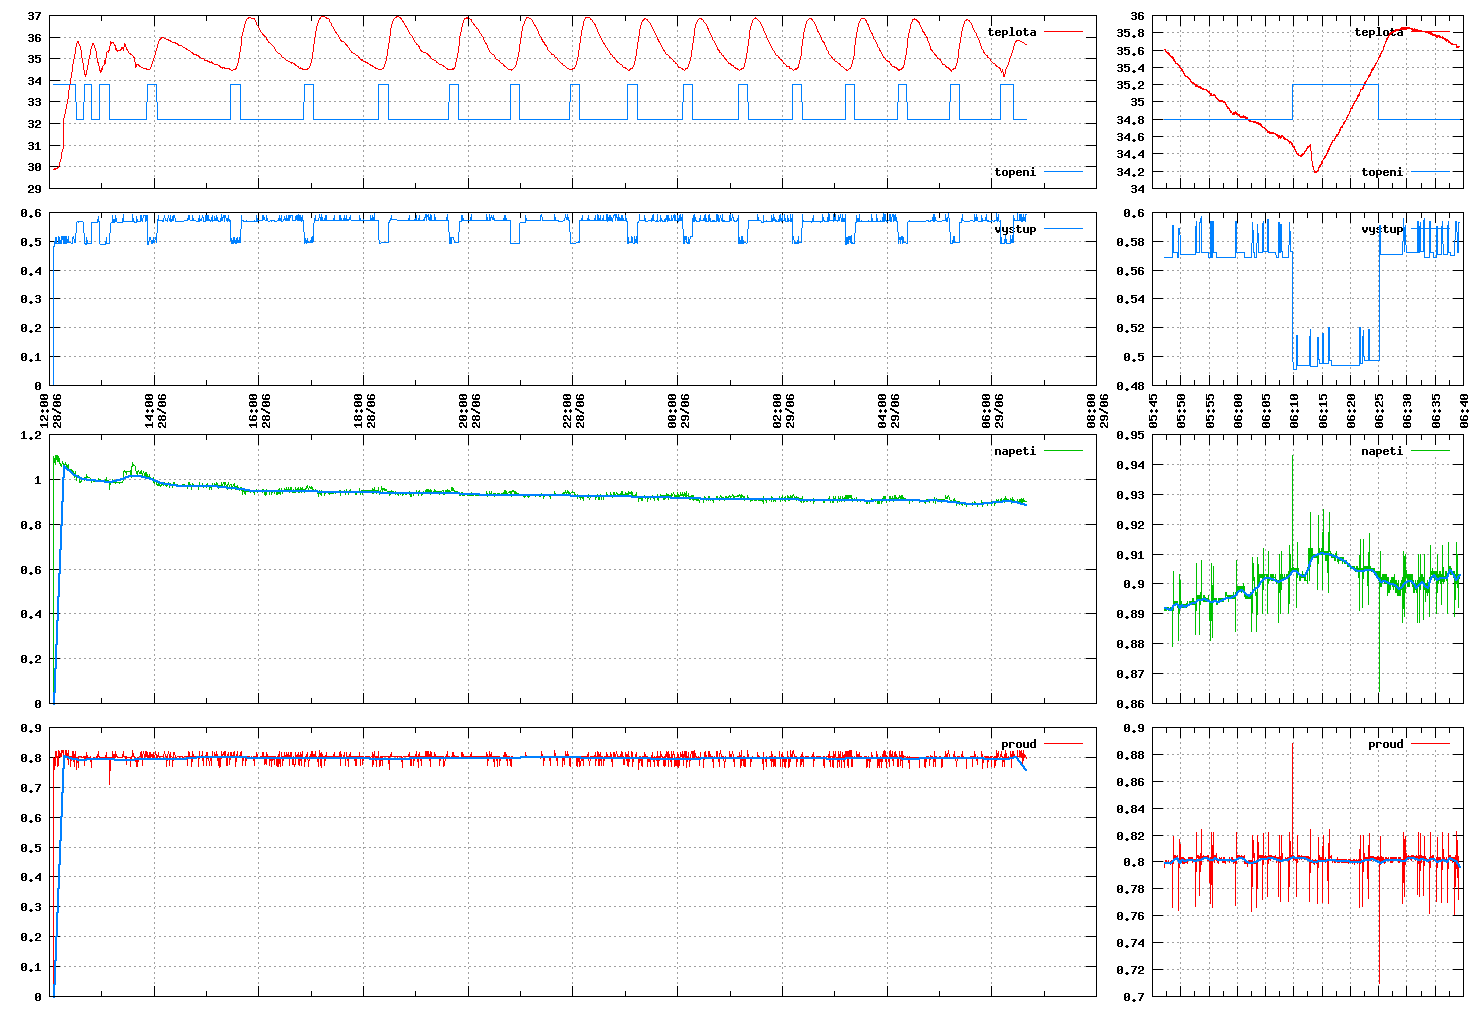 gPower data plot